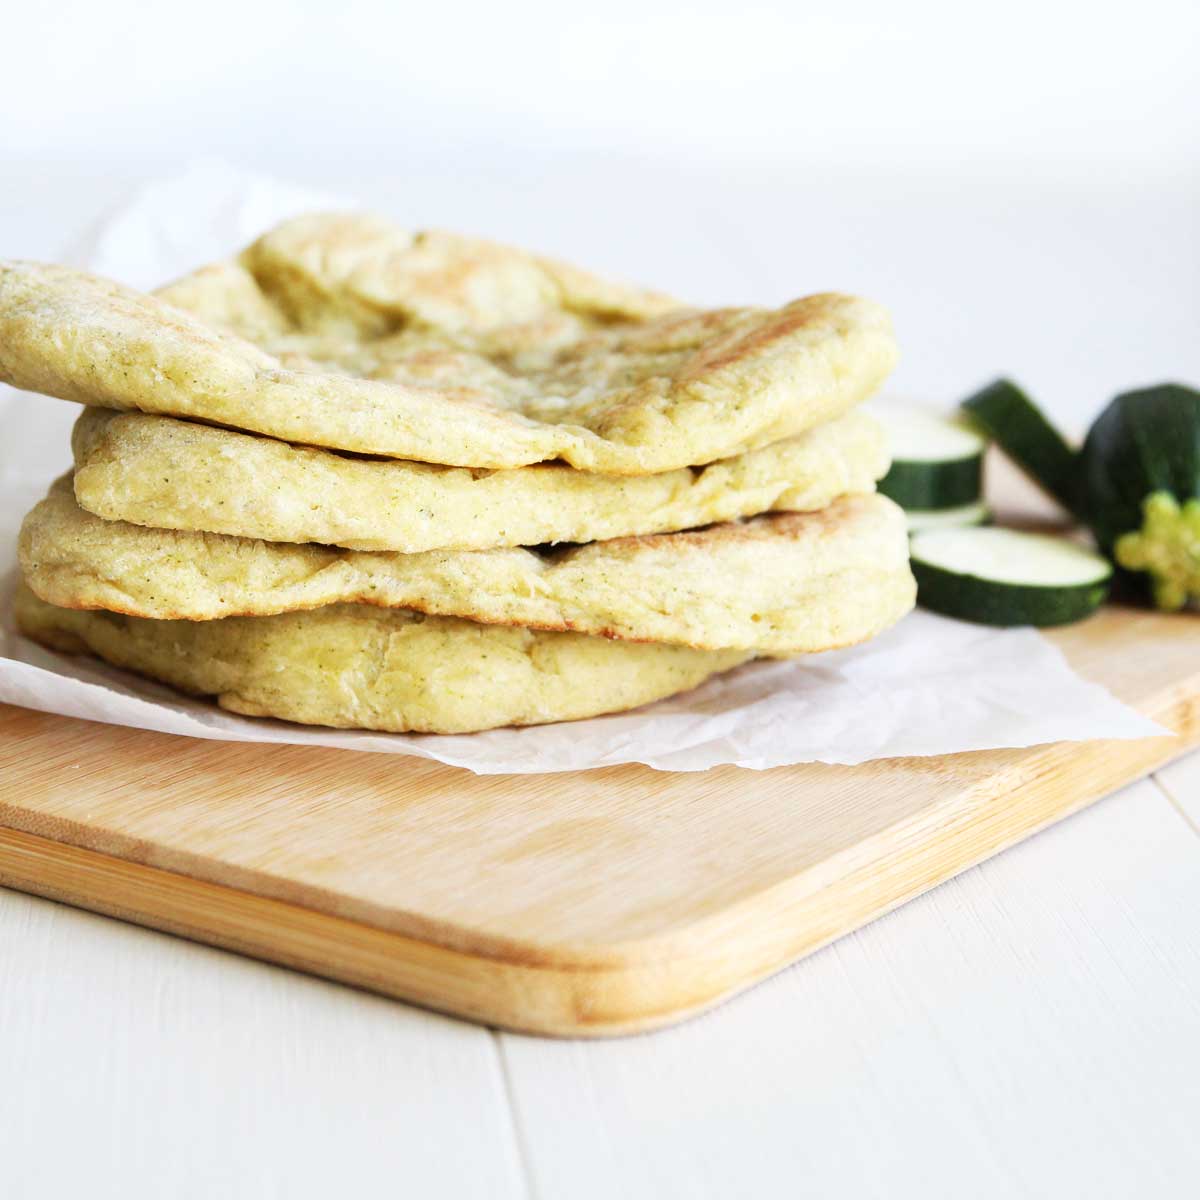 Healthy & Simple Zucchini Flatbread Made in the Food Processor - Zucchini Flatbread